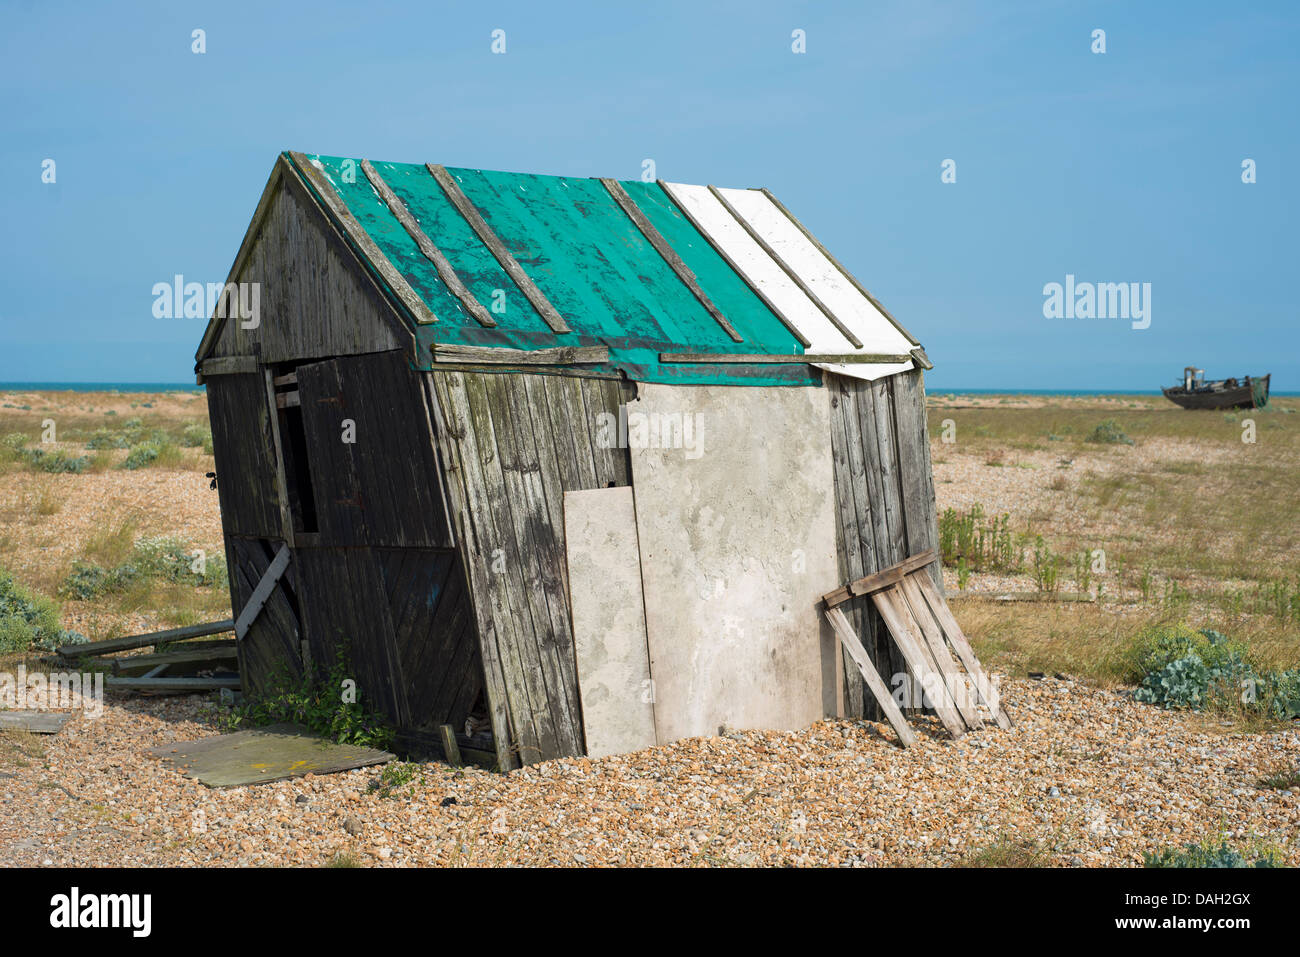 Cabañas de playa abandonada, Dungeness, Kent, UK Foto de stock